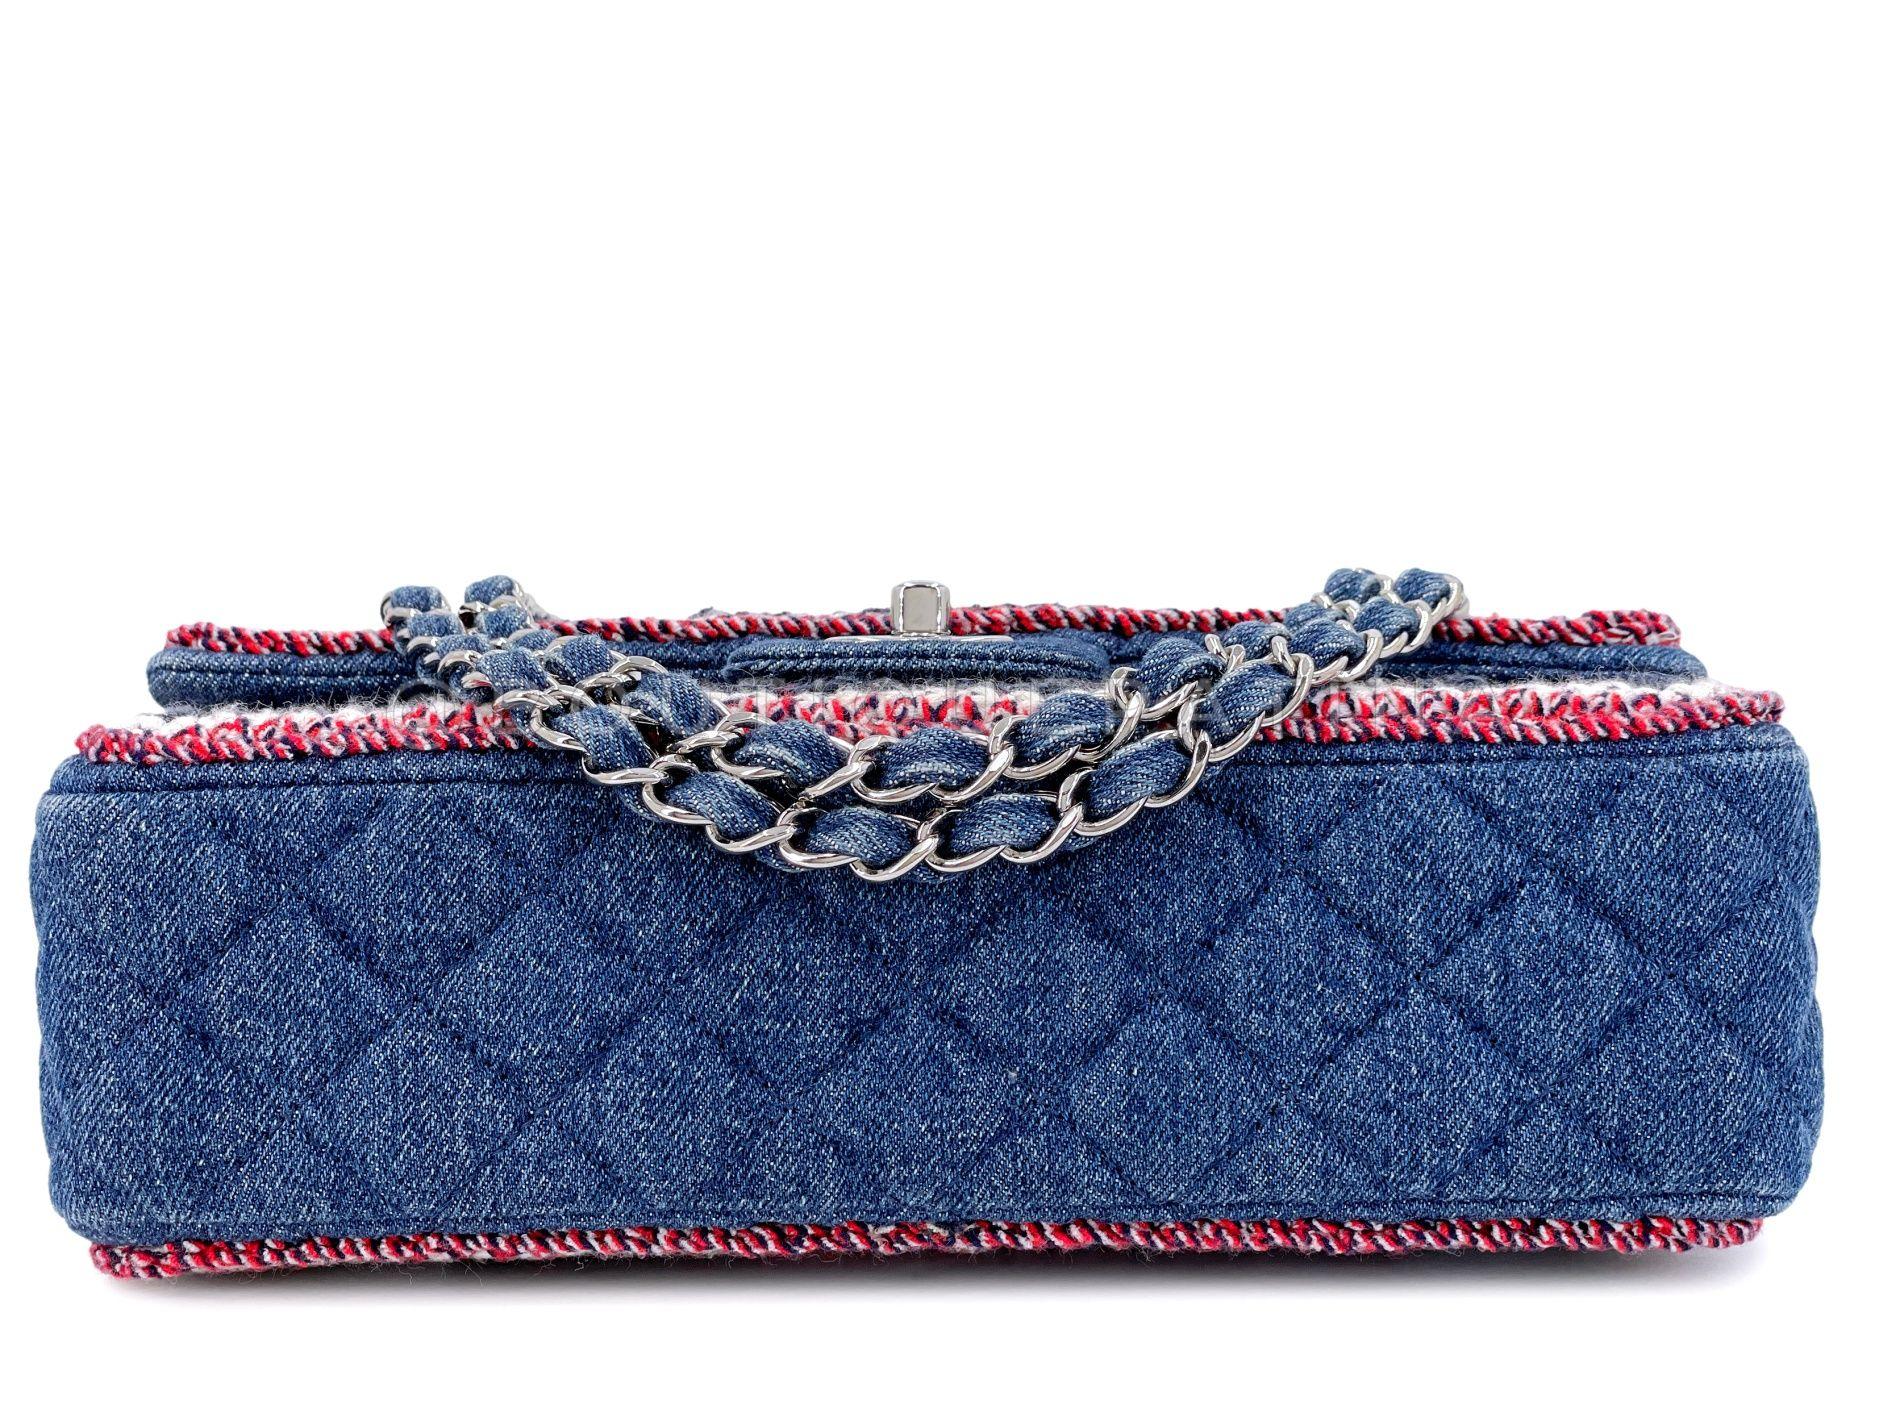 Chanel 2018 Framed Denim Medium Classic Flap Bag SHW 67966 For Sale 2